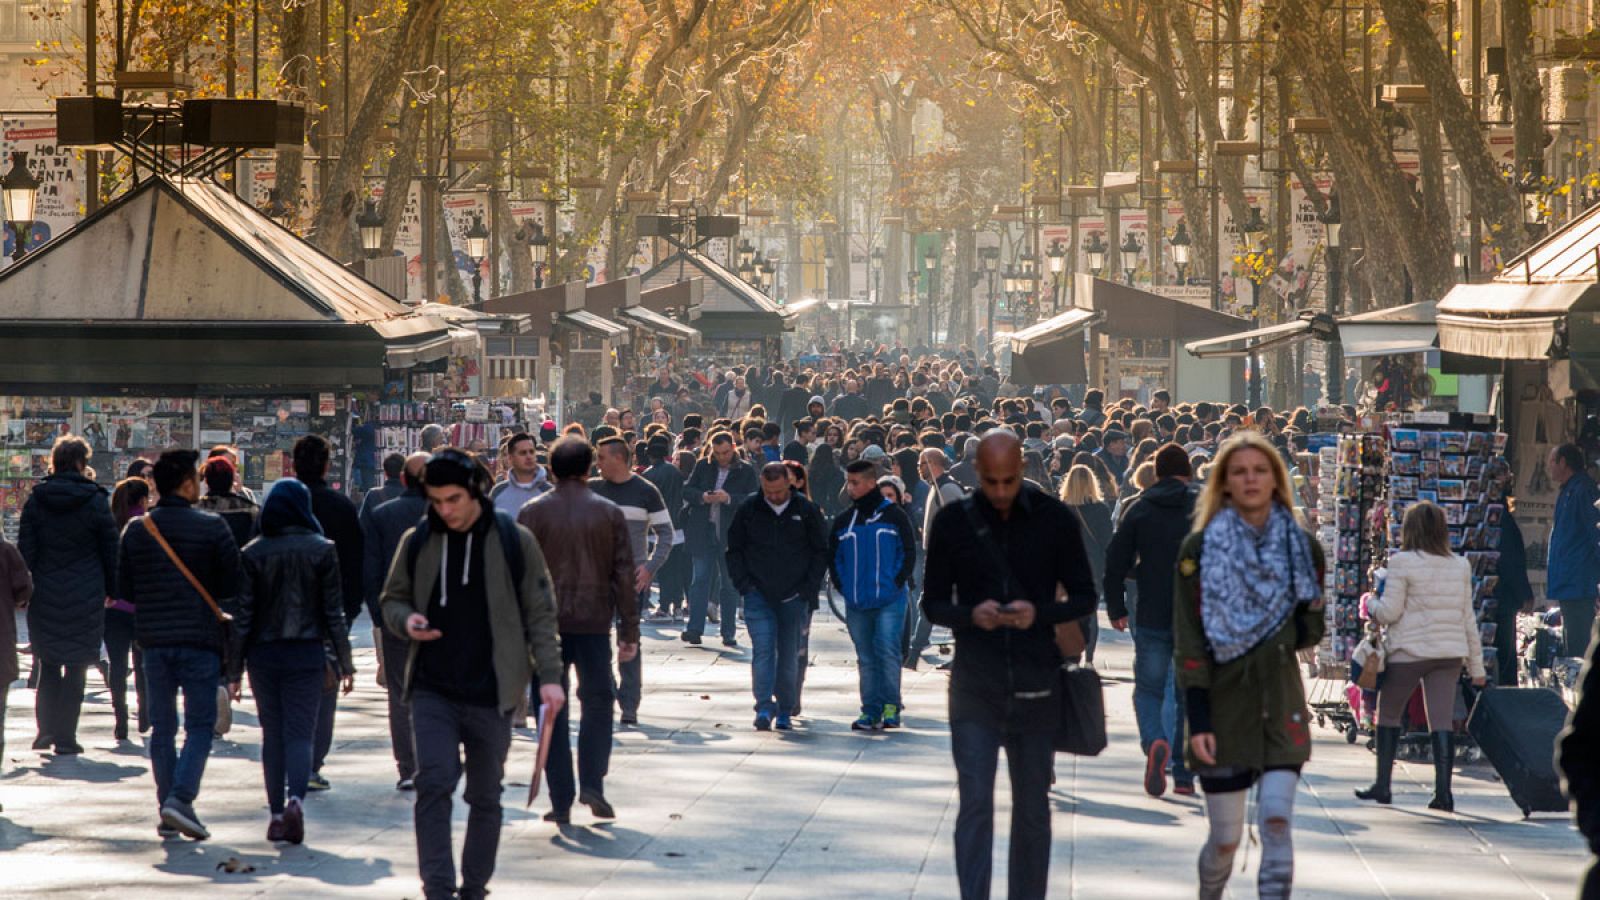 El INE cree que en 2033 habrá 49 millones de habitantes en España